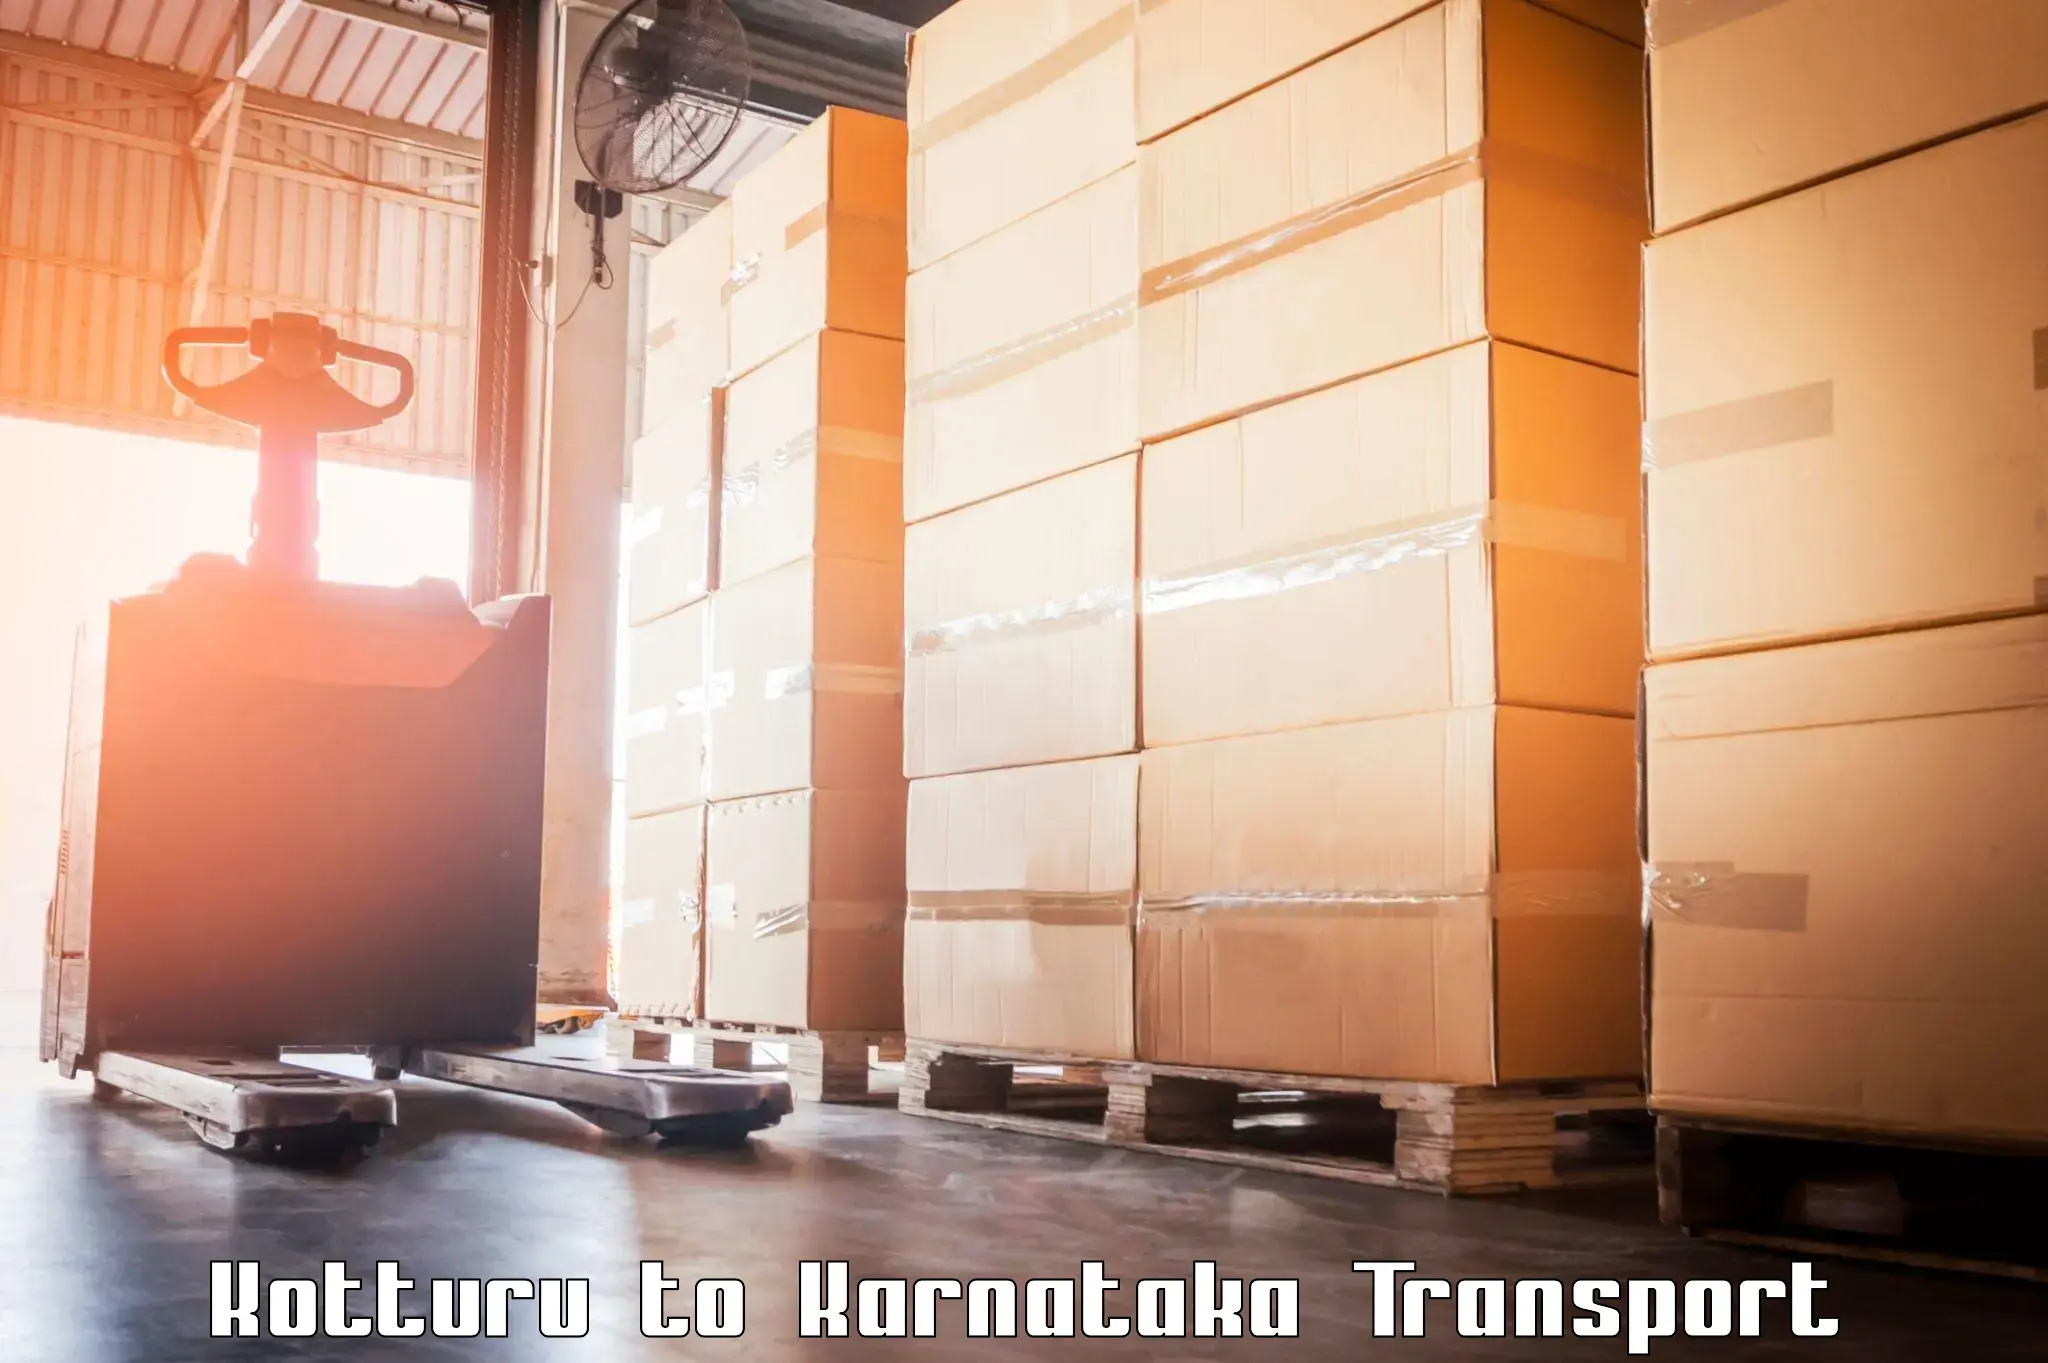 International cargo transportation services Kotturu to Shorapur